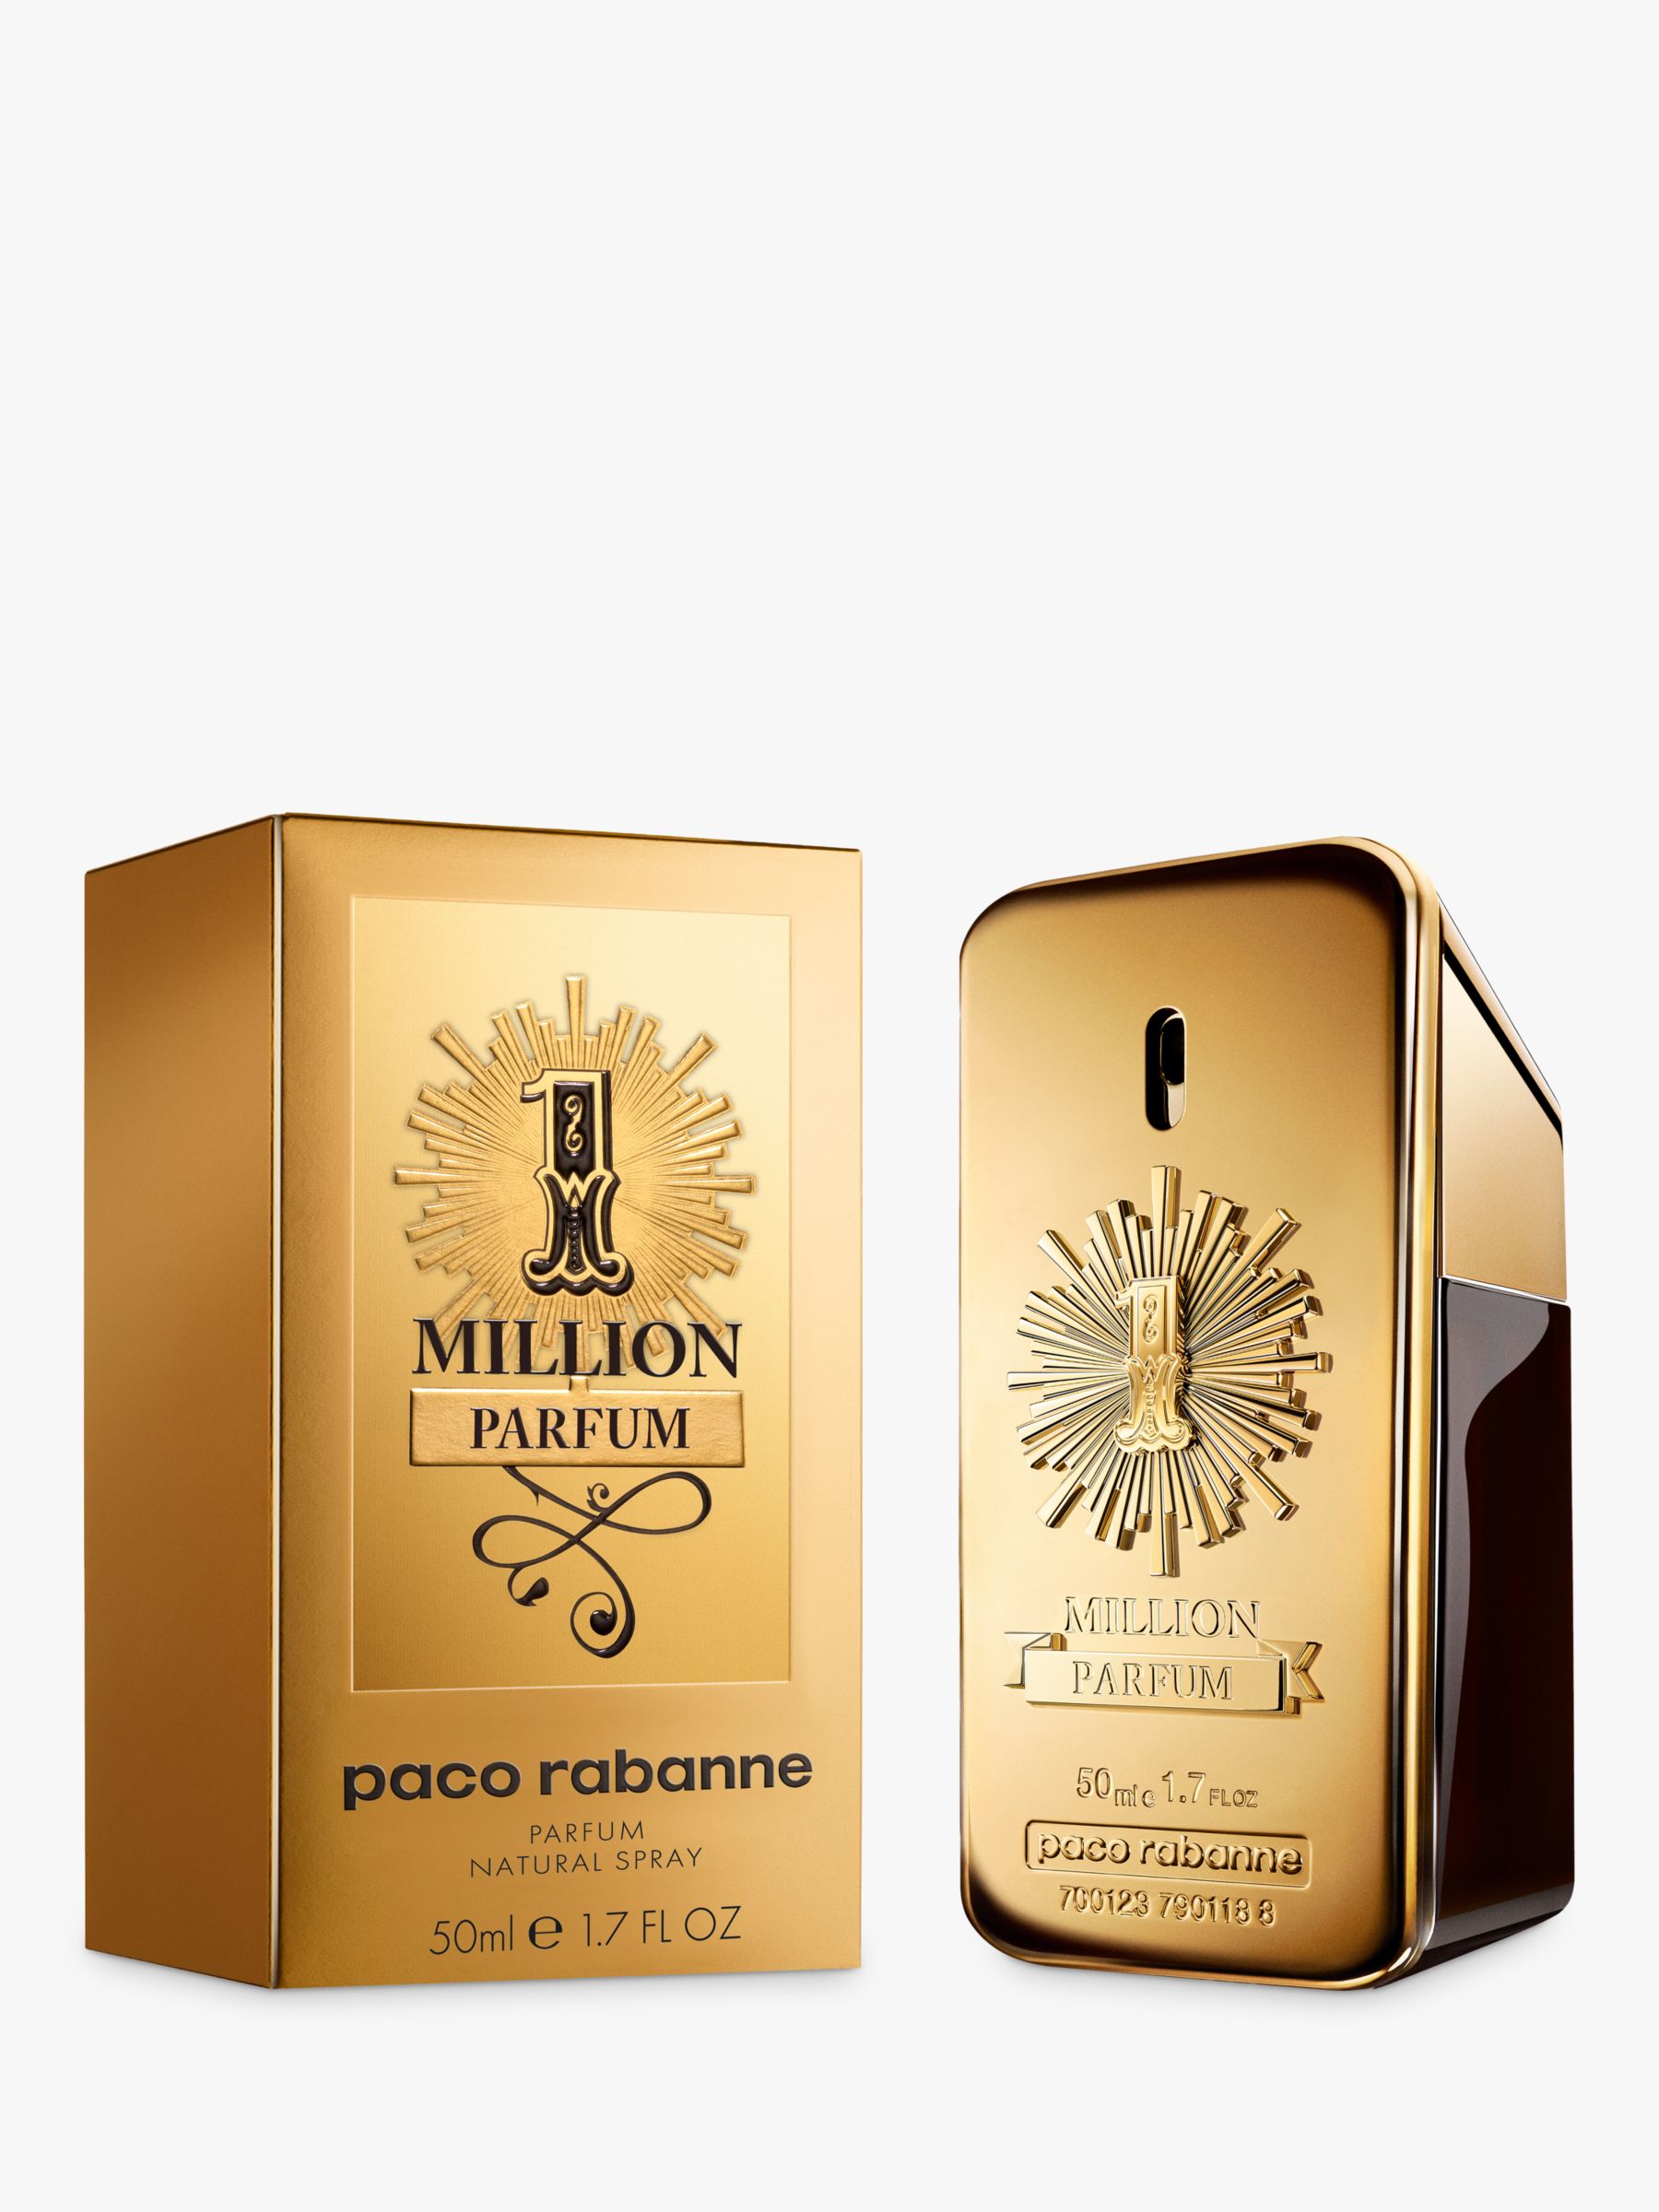 Paco Rabanne 1 Million Parfum at John 